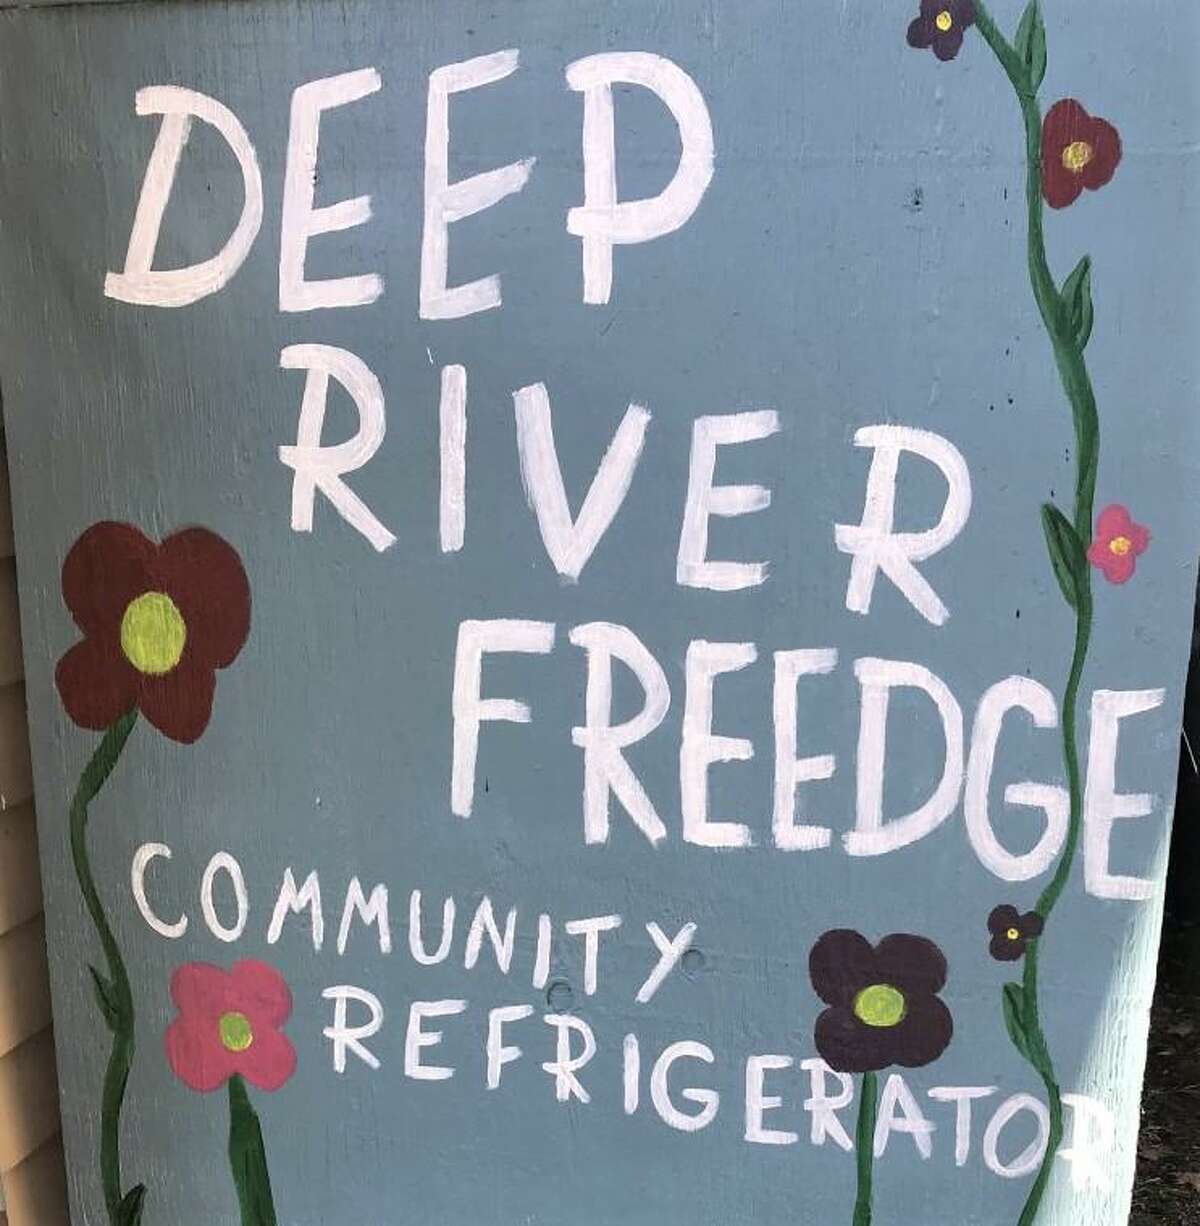 Bennett’s Books’ Deep River Freedge